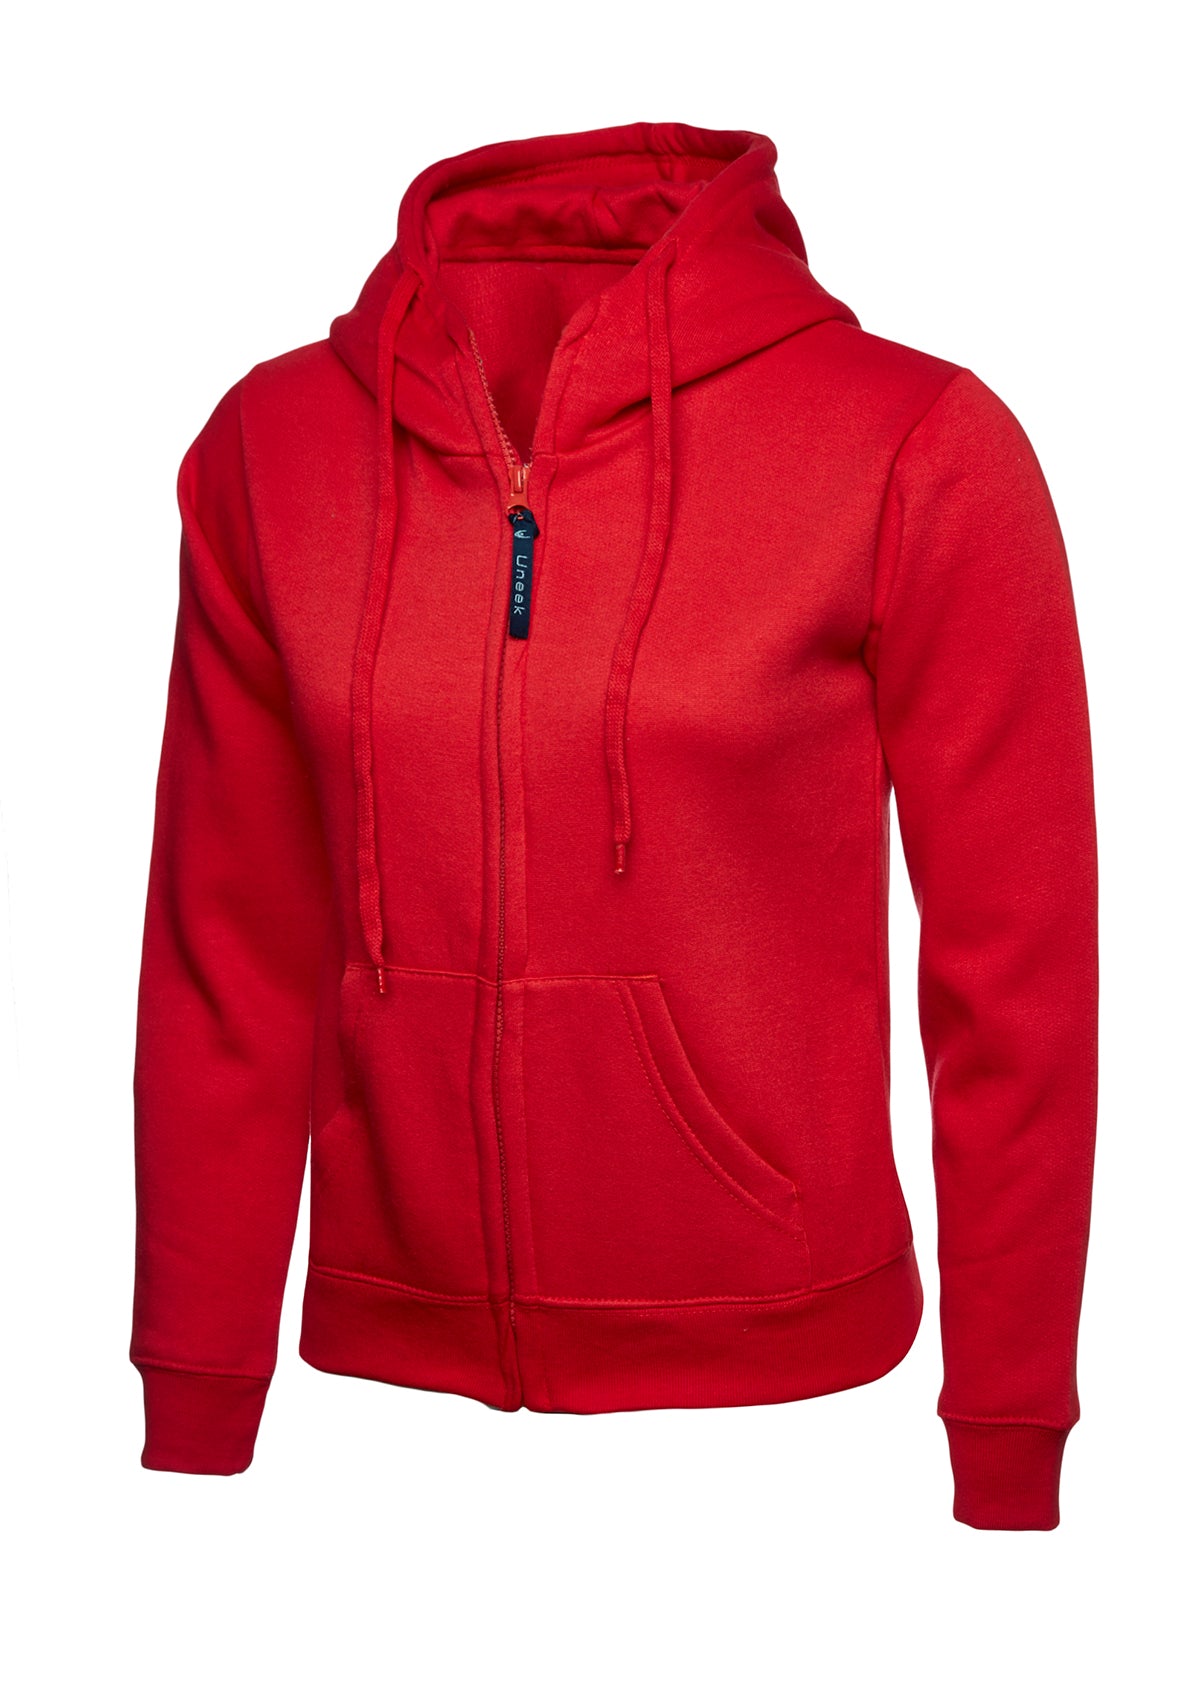 Uneek Ladies Classic Full Zip Hooded Sweatshirt UC505 - Red